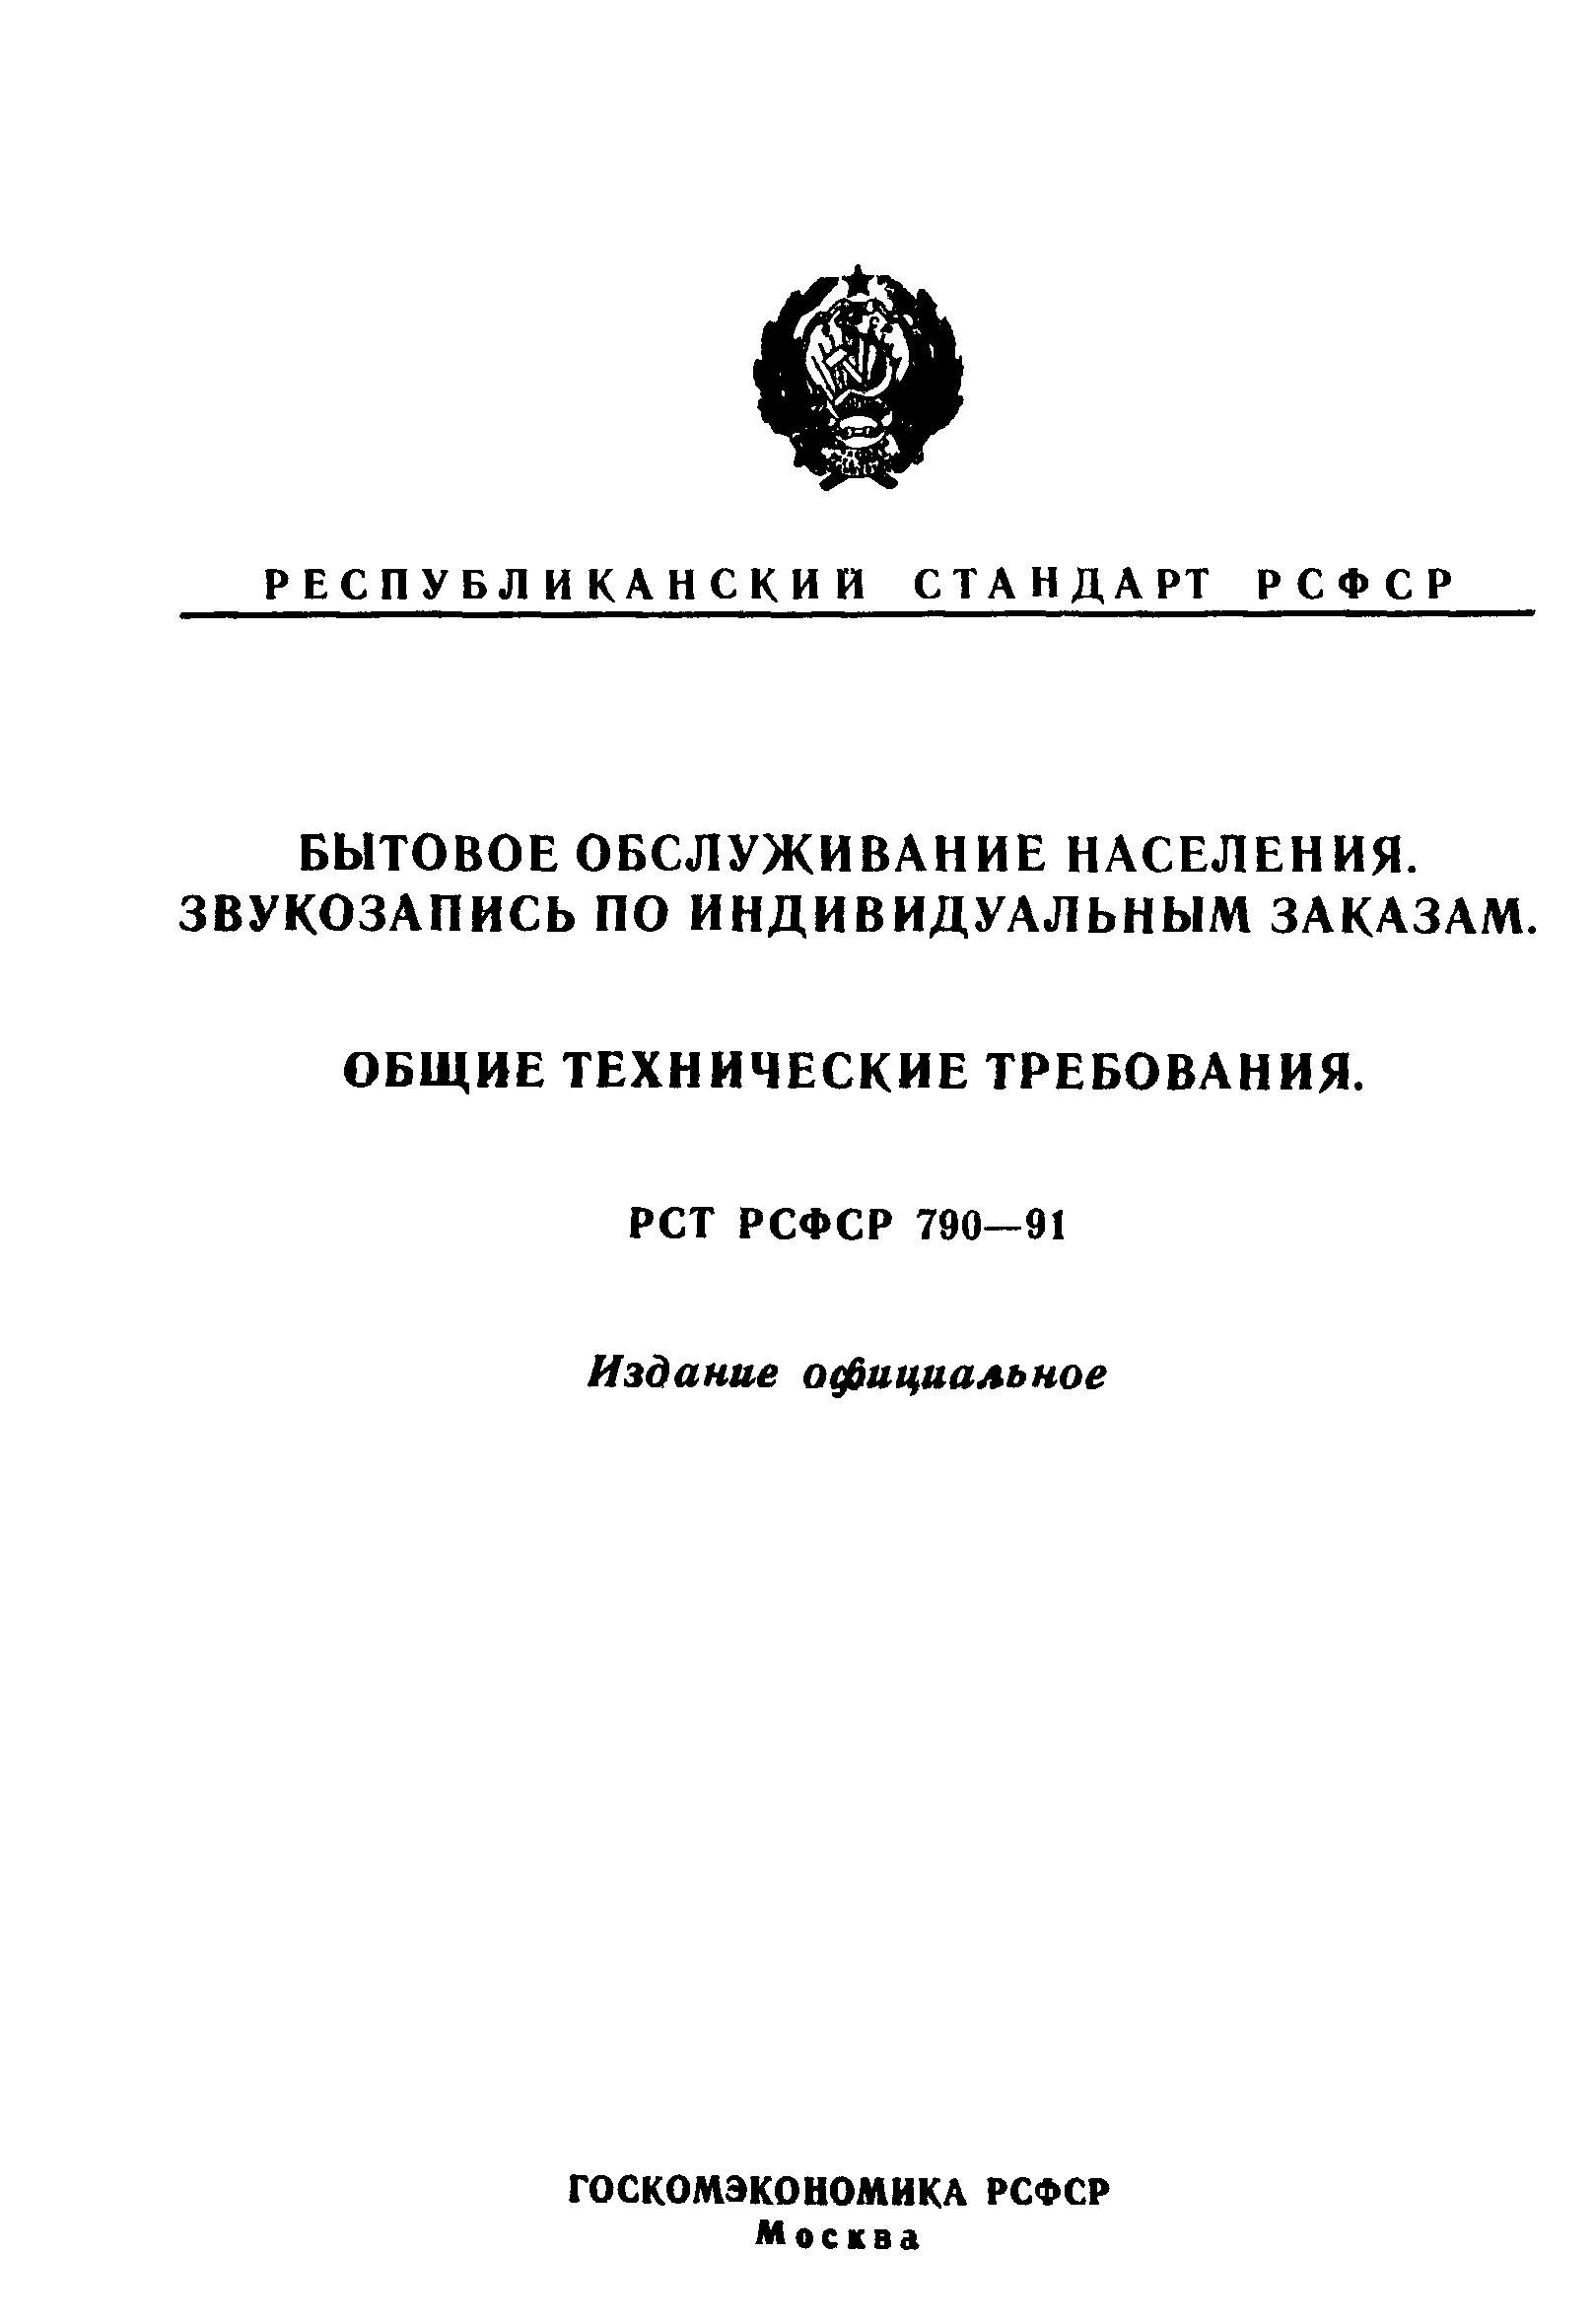 РСТ РСФСР 790-91